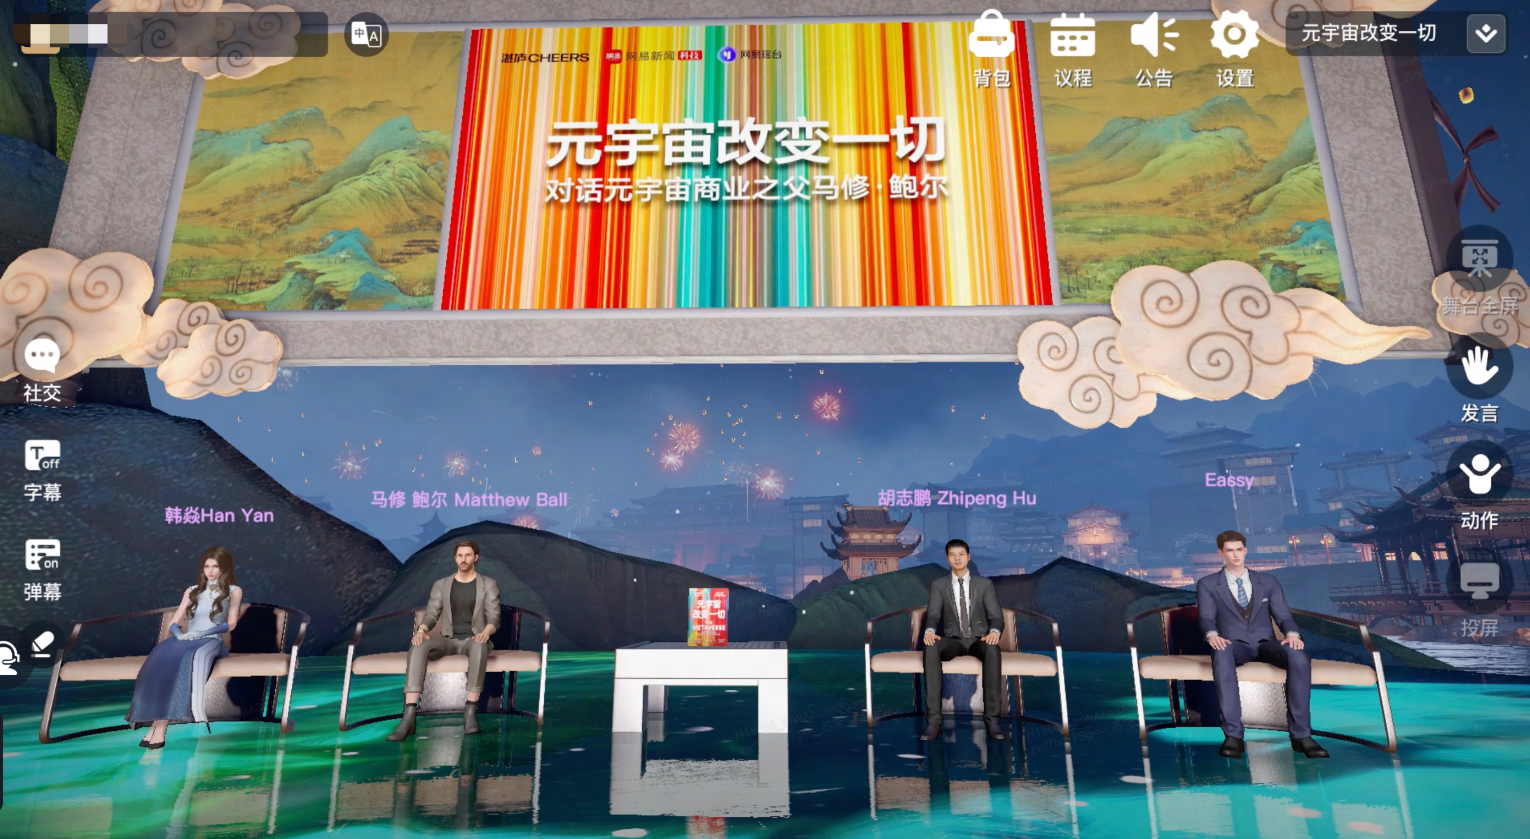 图片展示了四位嘉宾坐在虚拟演播室里，背景是中国风的山水画，氛围古典且现代。